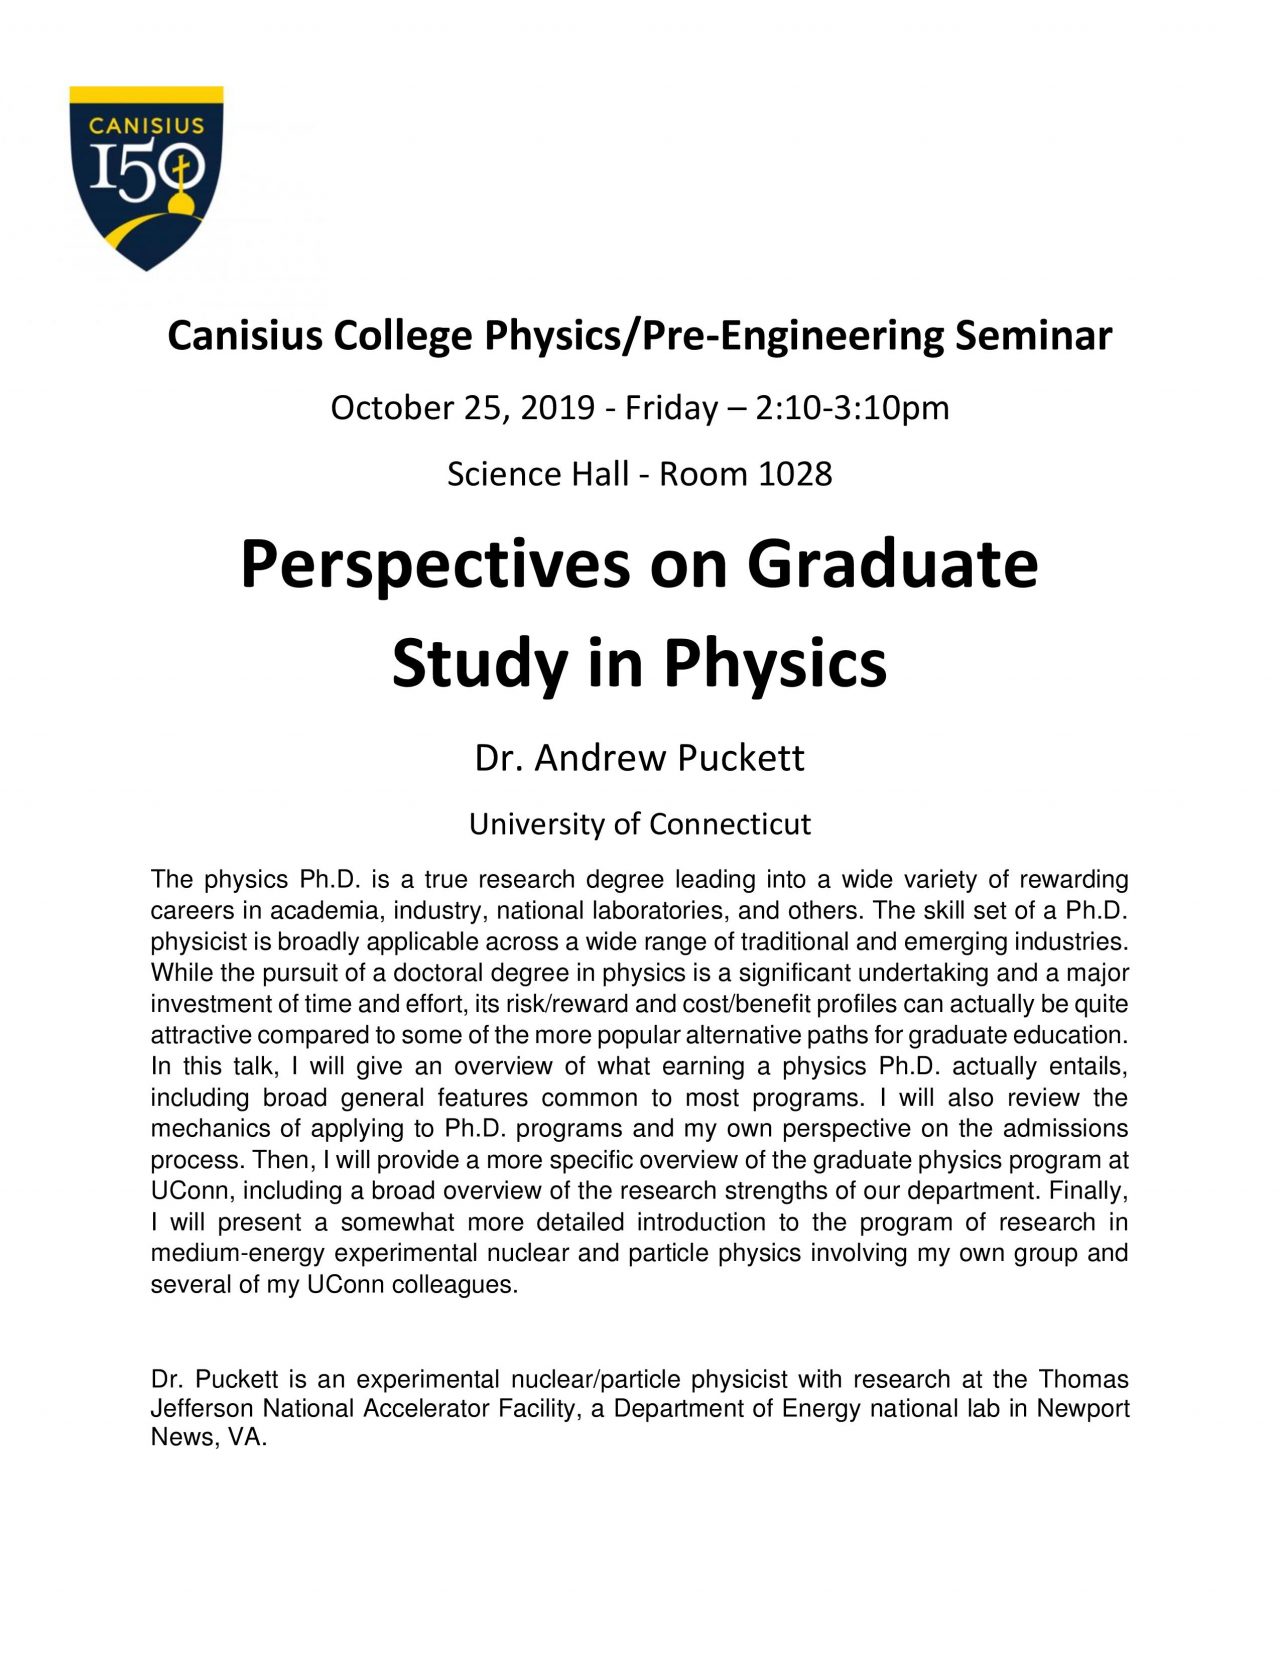 physics senior thesis princeton